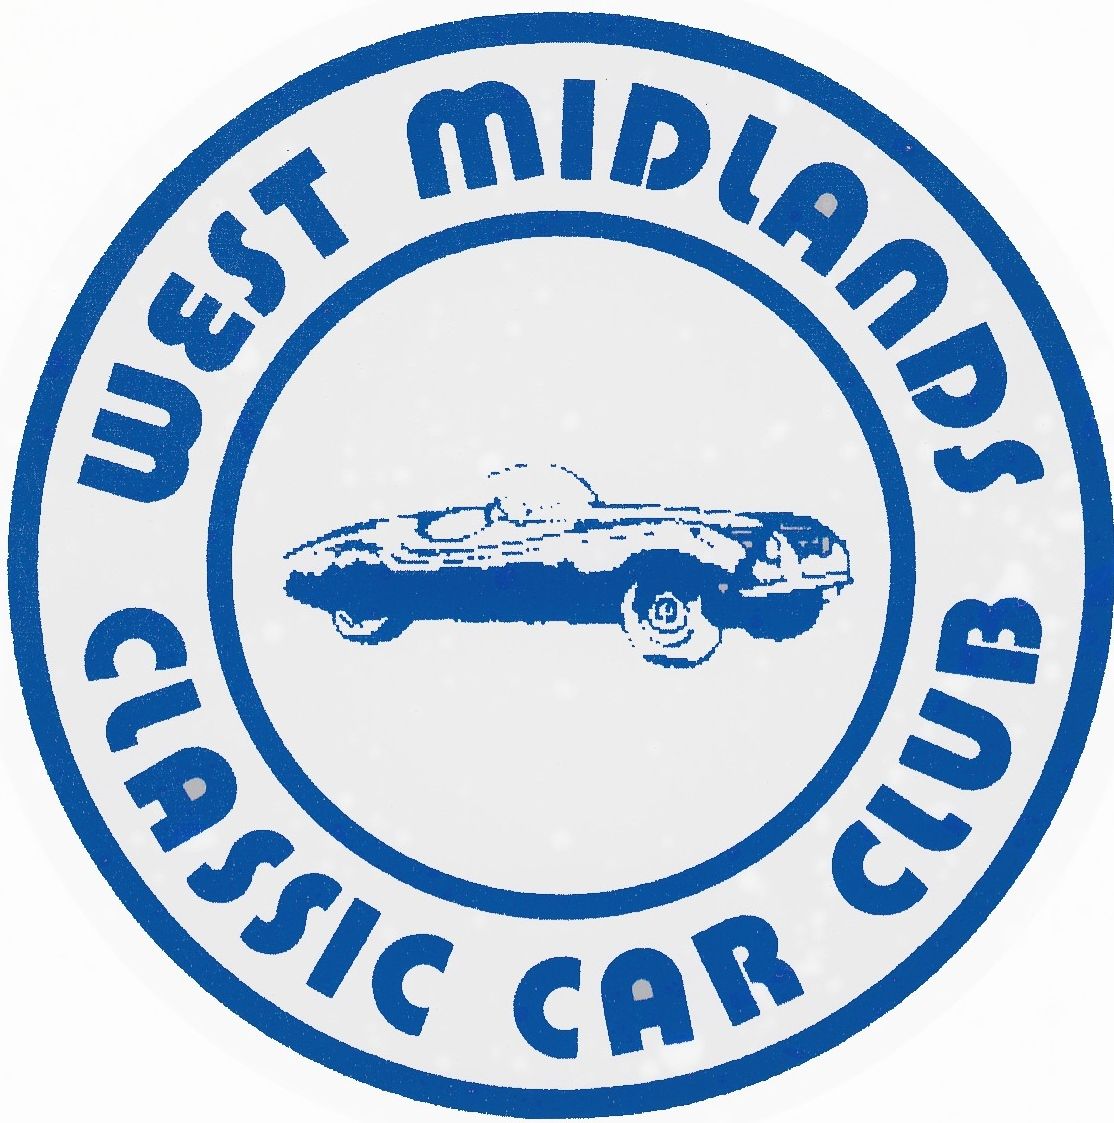 West Midlands Classic Car Club